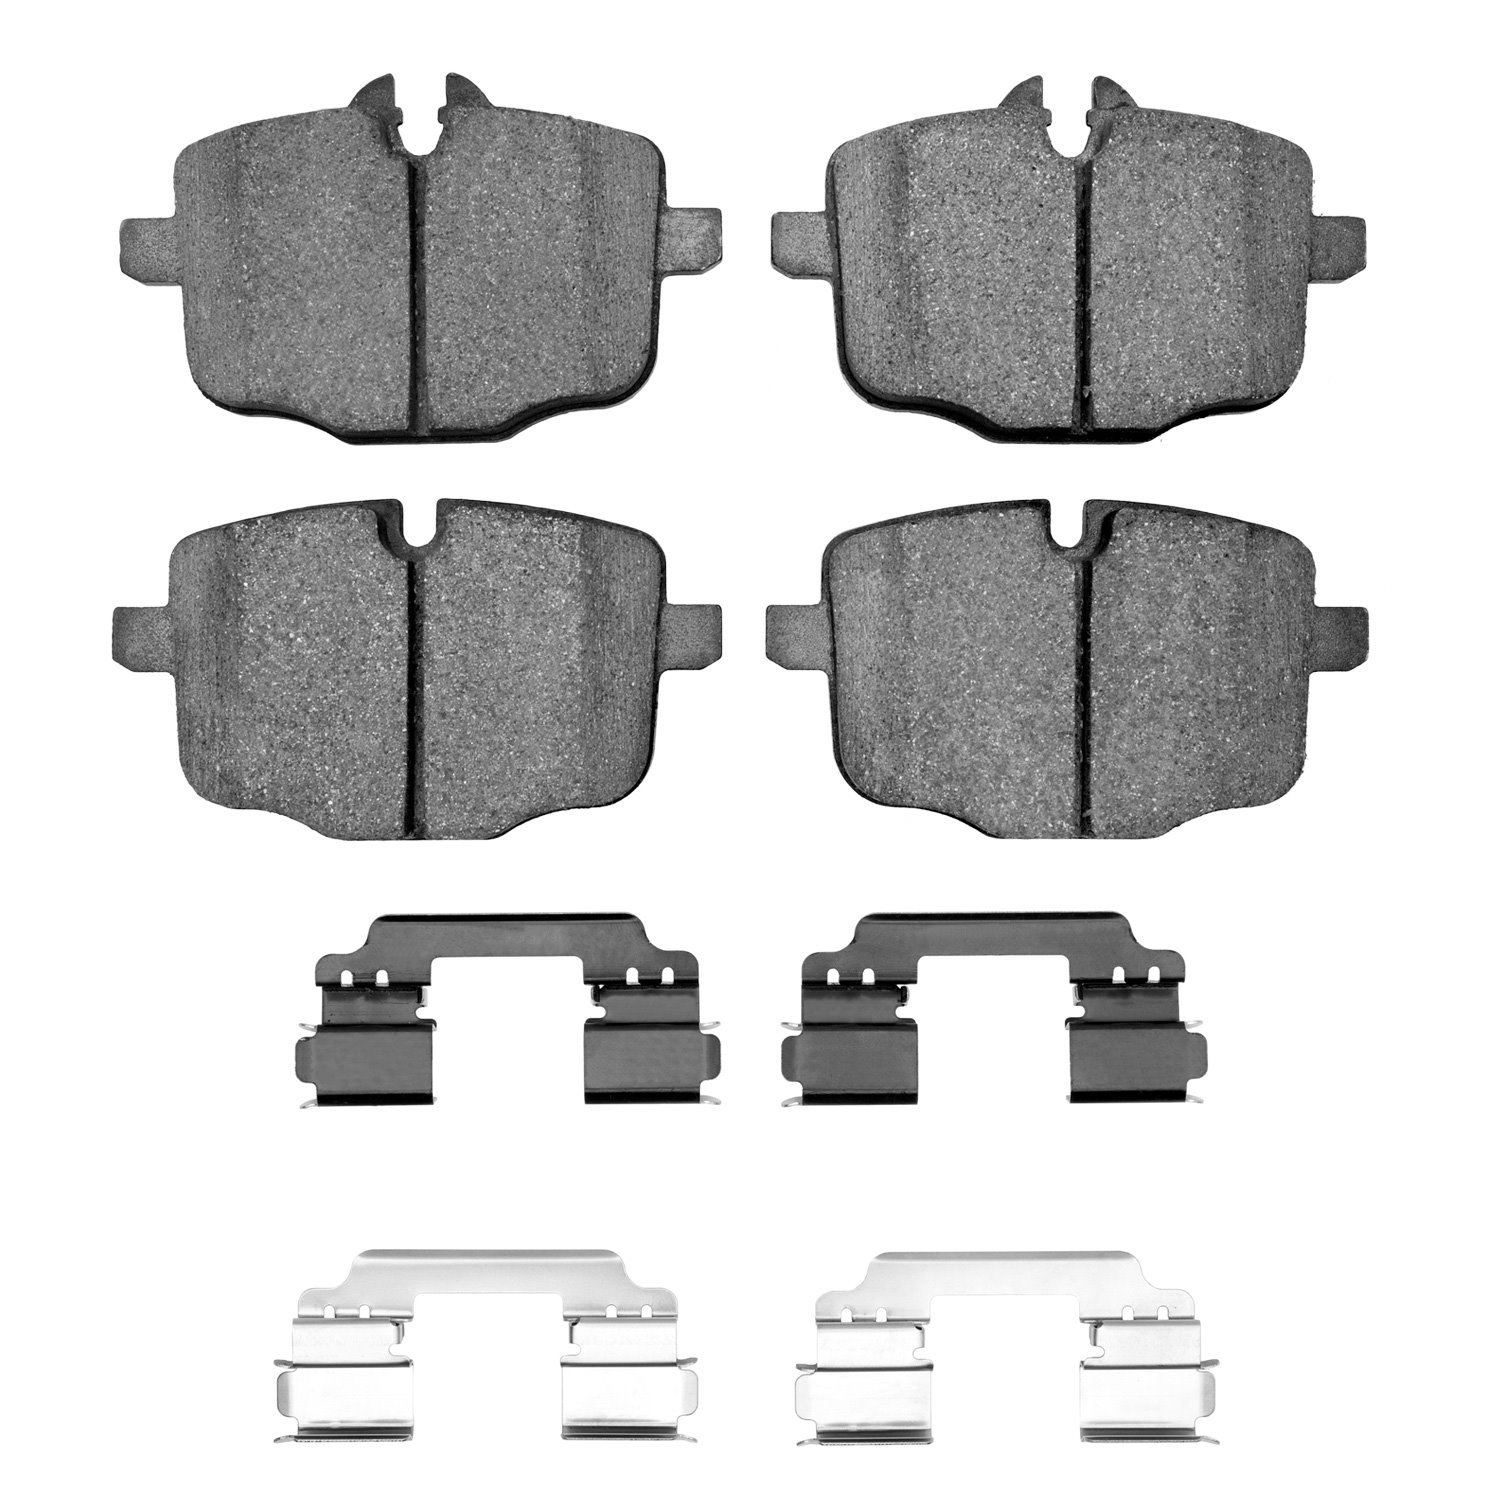 1600-1469-02 5000 Euro Ceramic Brake Pads & Hardware Kit, 2012-2019 BMW, Position: Rear